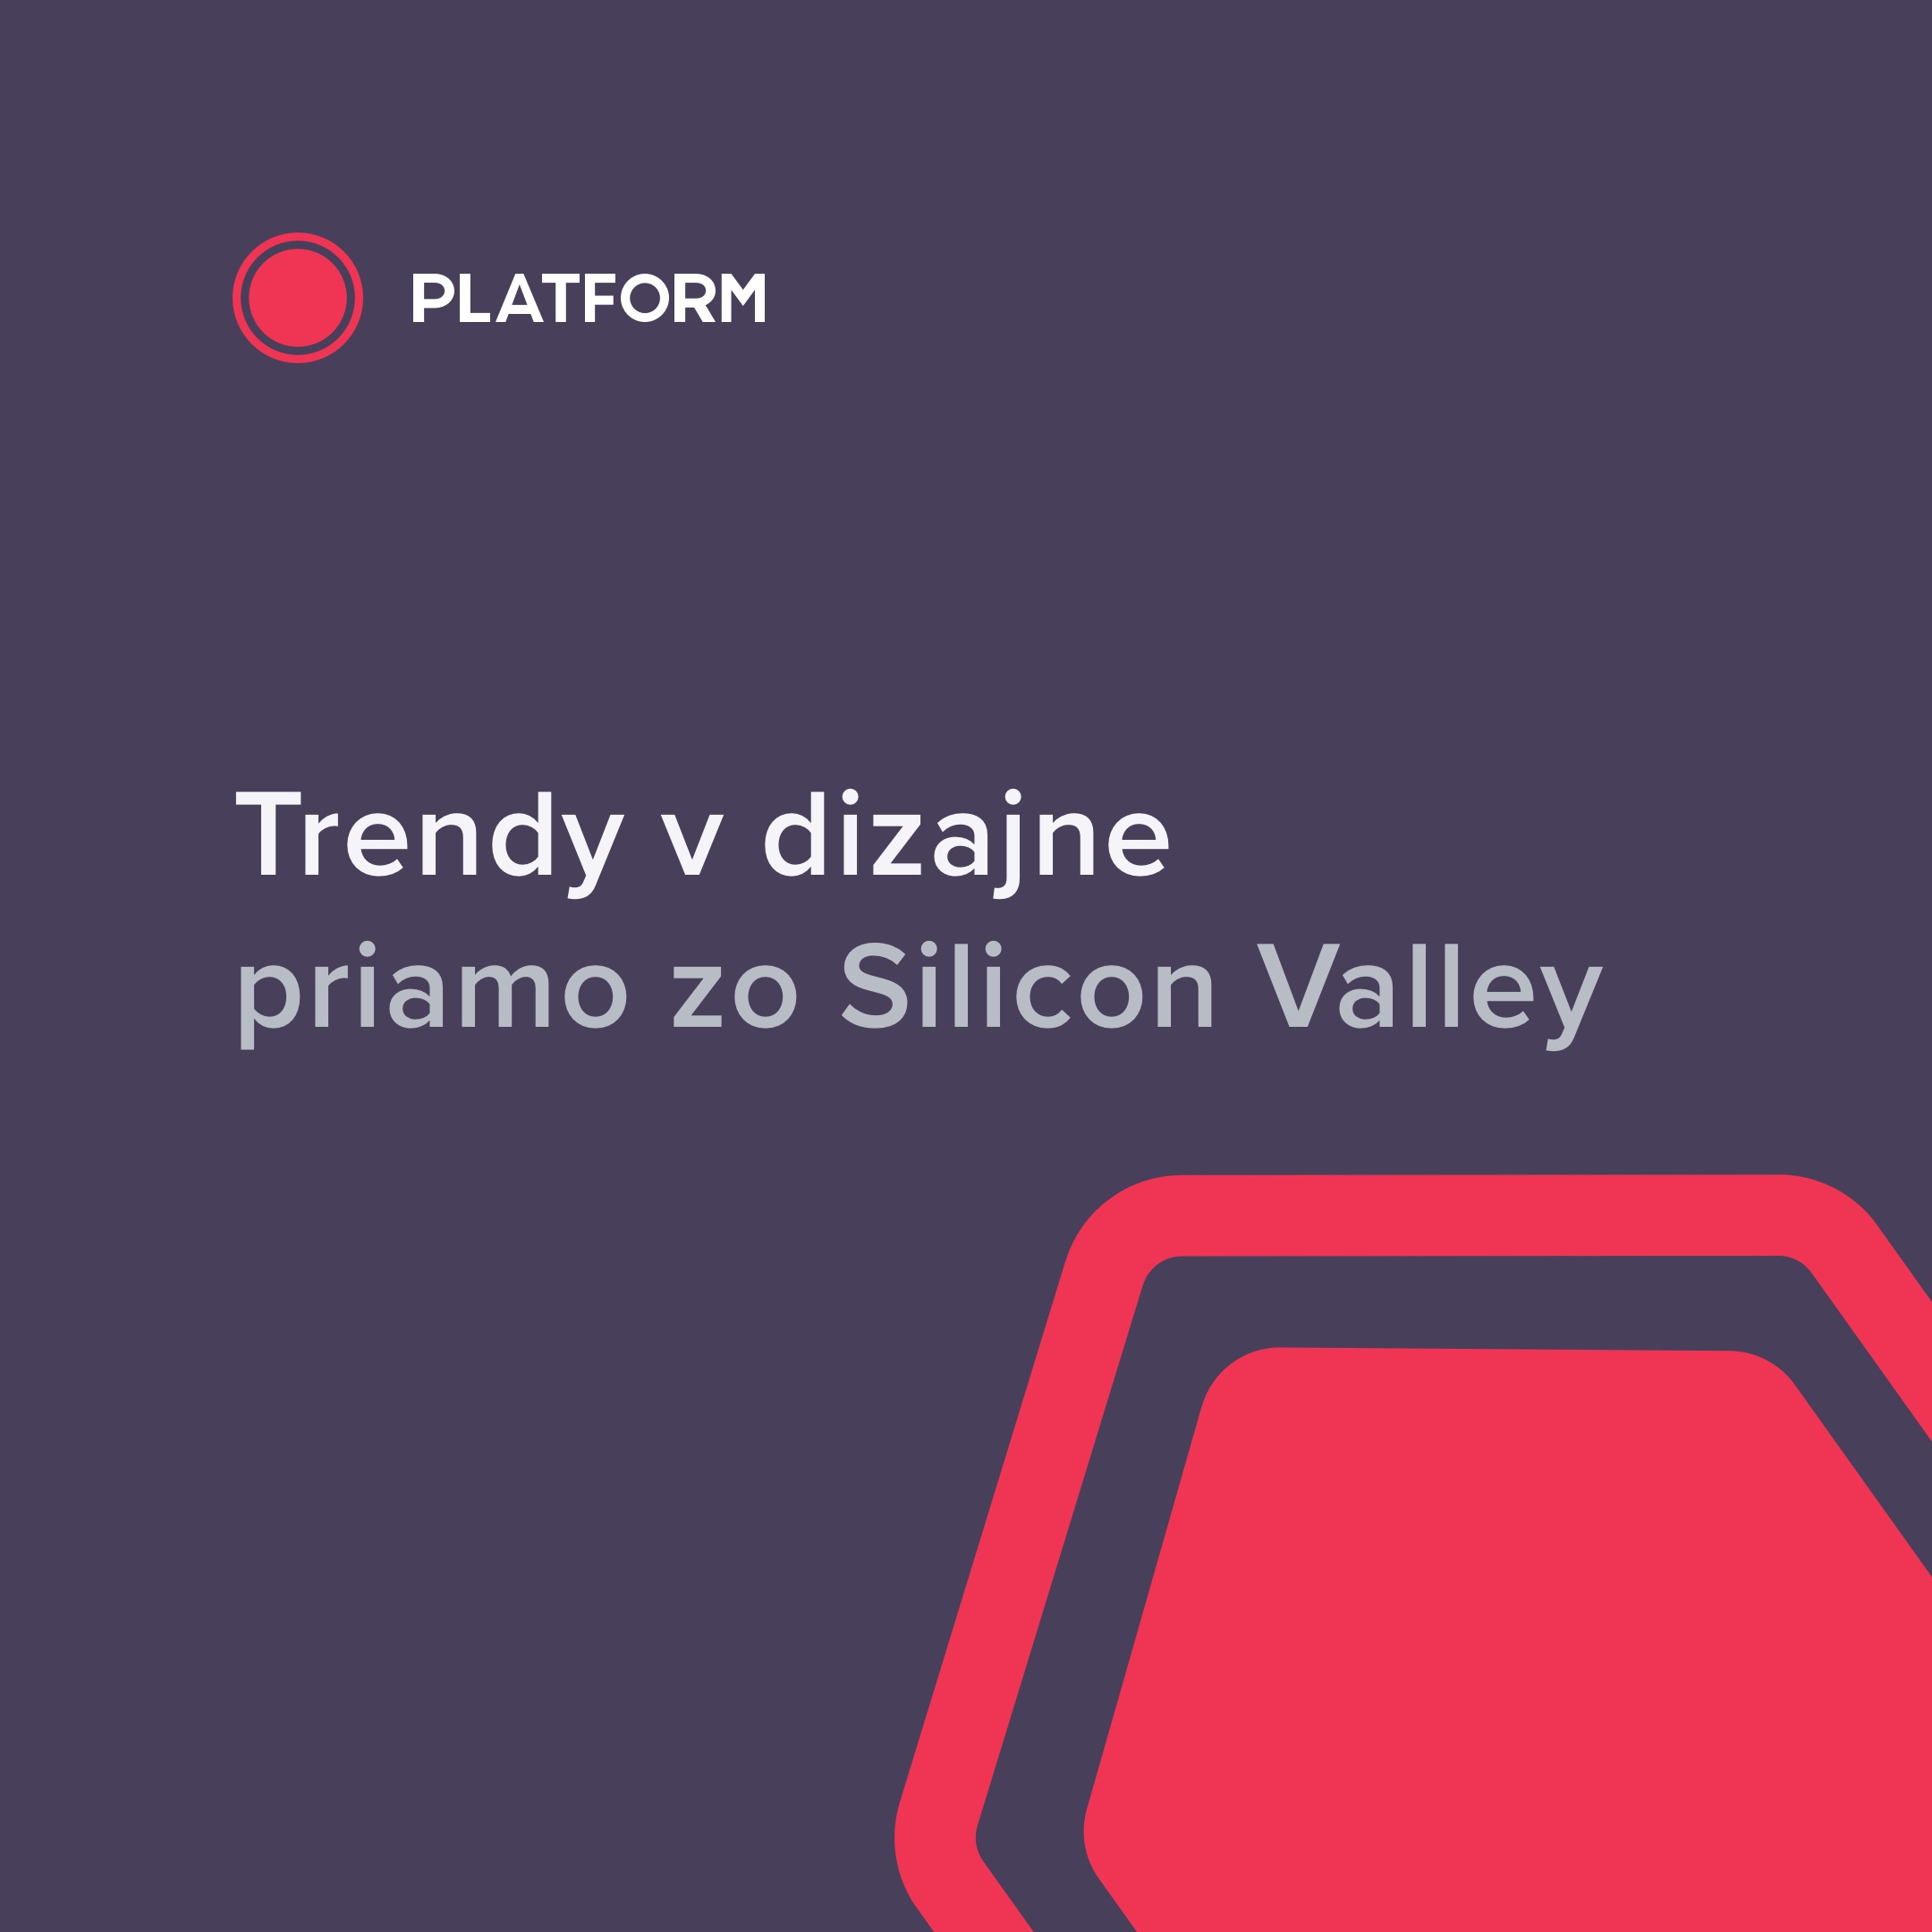 Trendy v dizajne priamo zo Silicon Valley